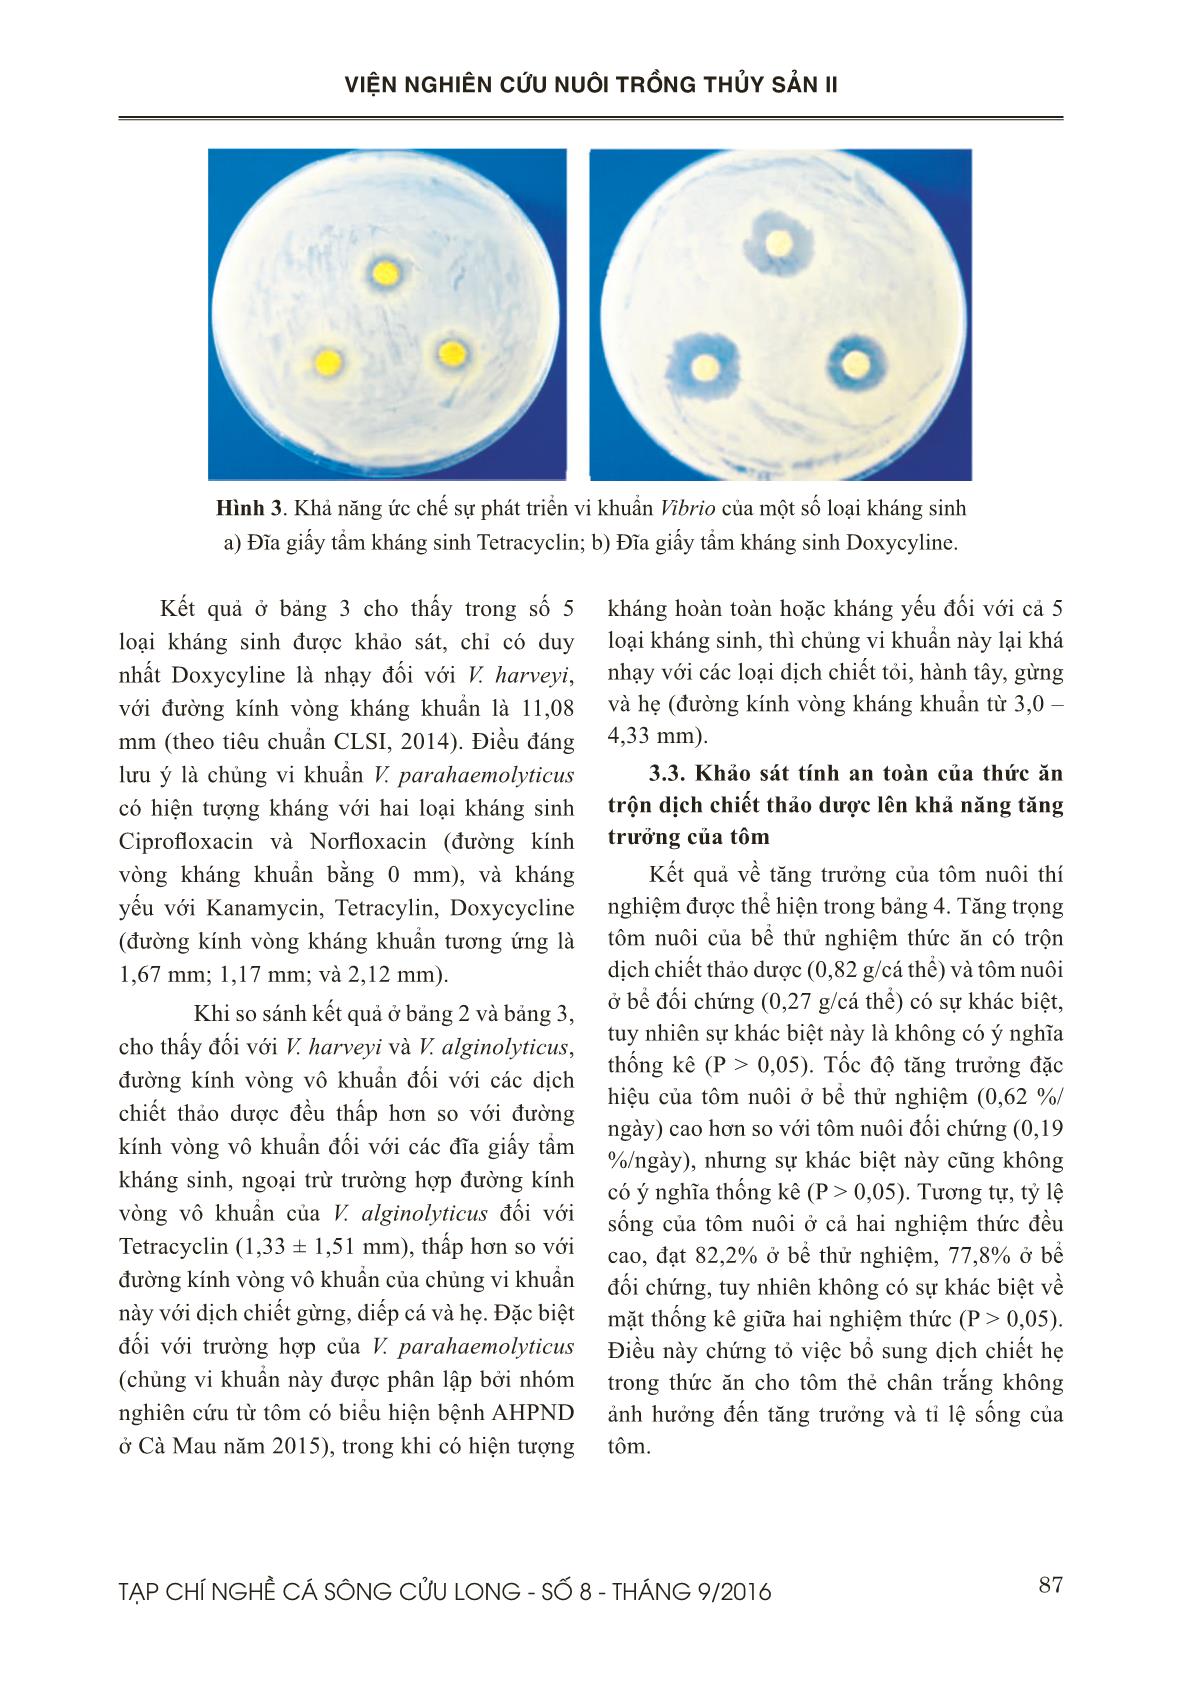 Khả năng ức chế tăng trưởng của Vibrio spp. bởi một số dịch chiết có nguồn gốc thảo dược trang 6